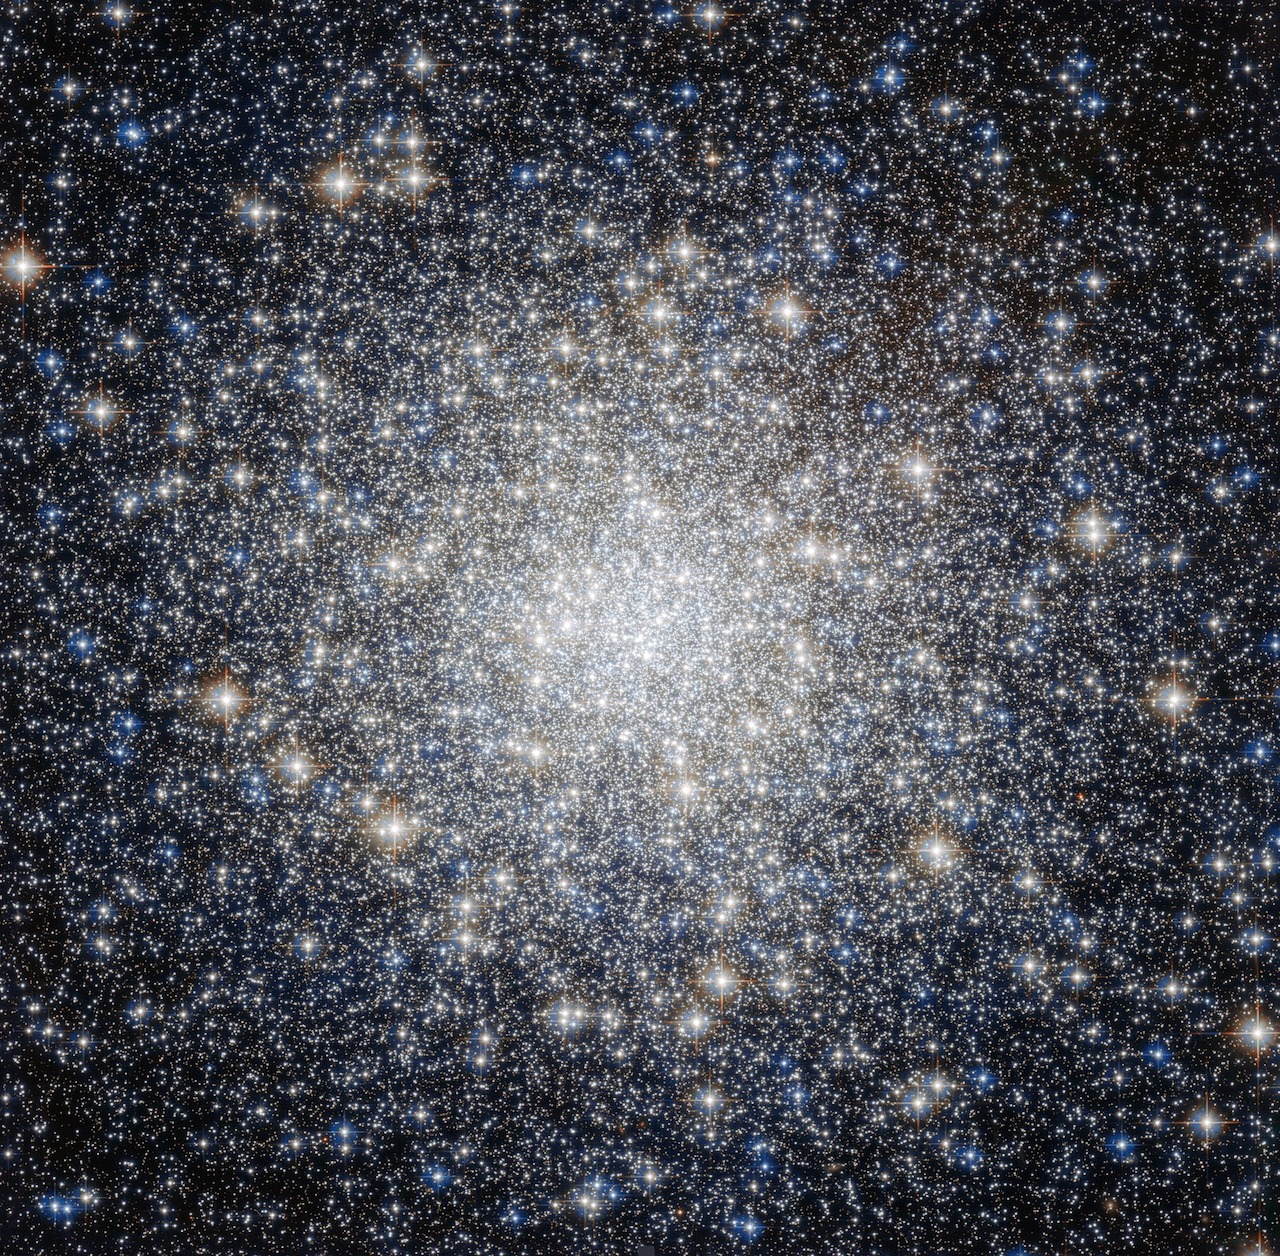  A globular cluster 